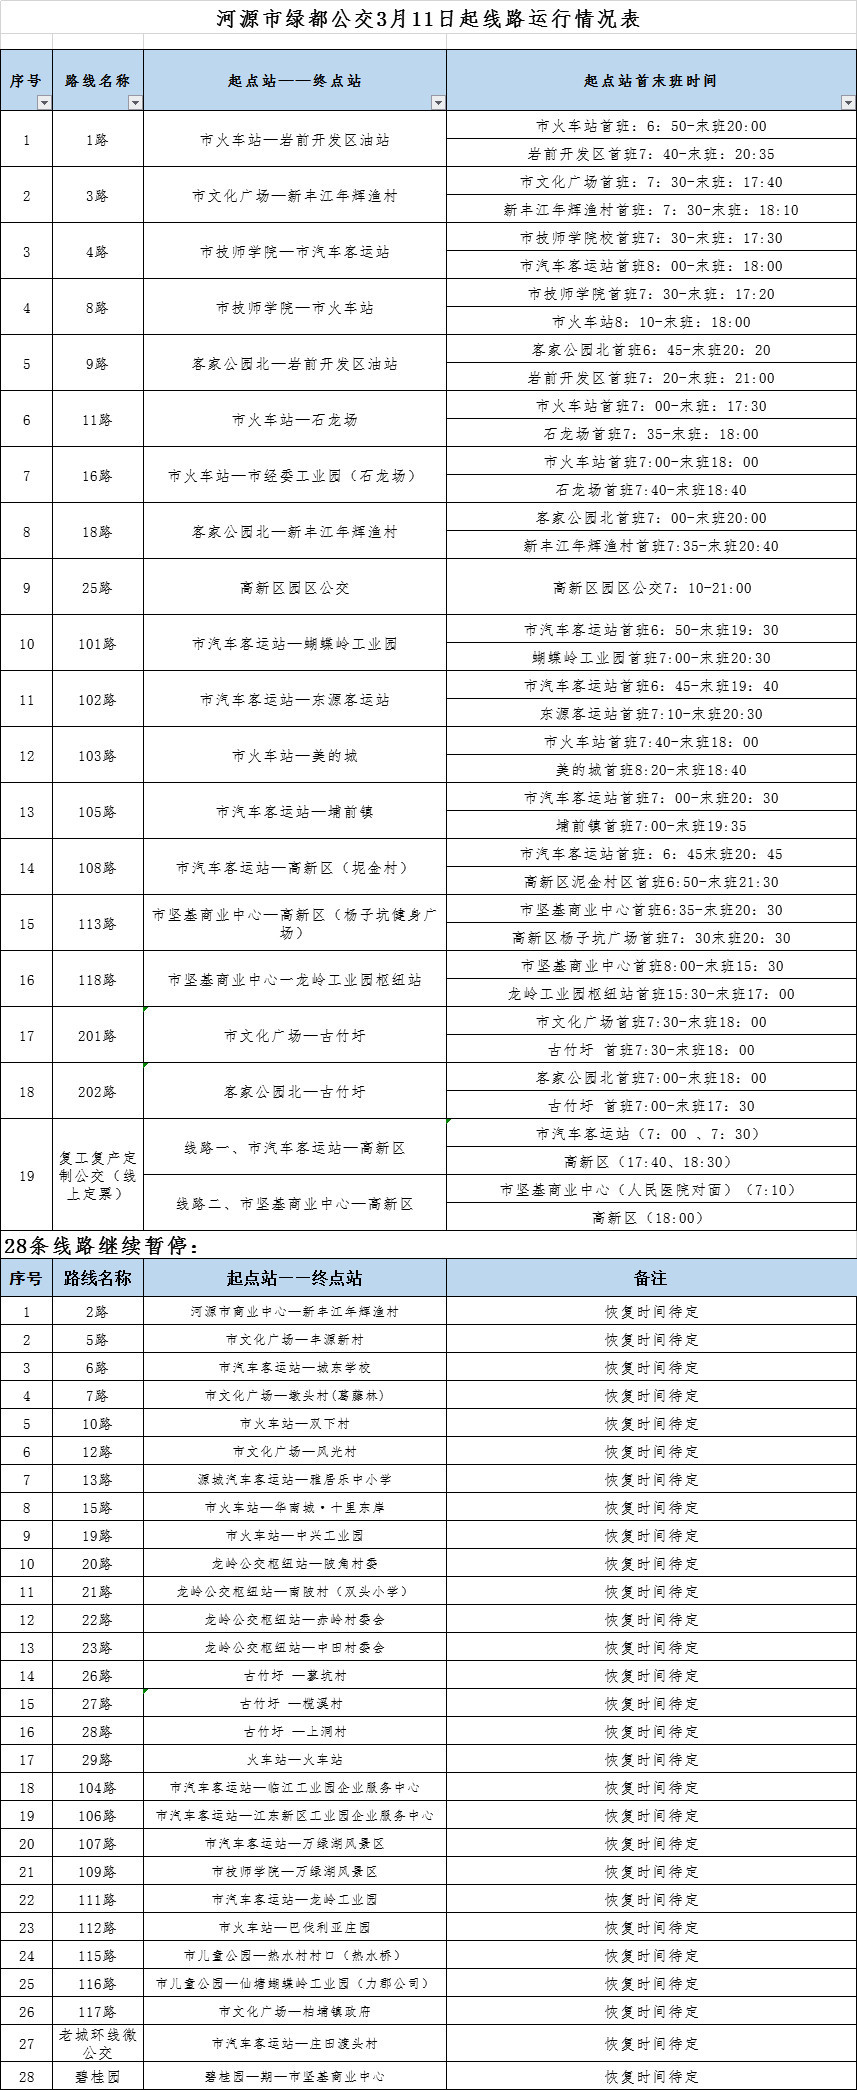 2020年3月11日起江东新区公交线路运营调整通告